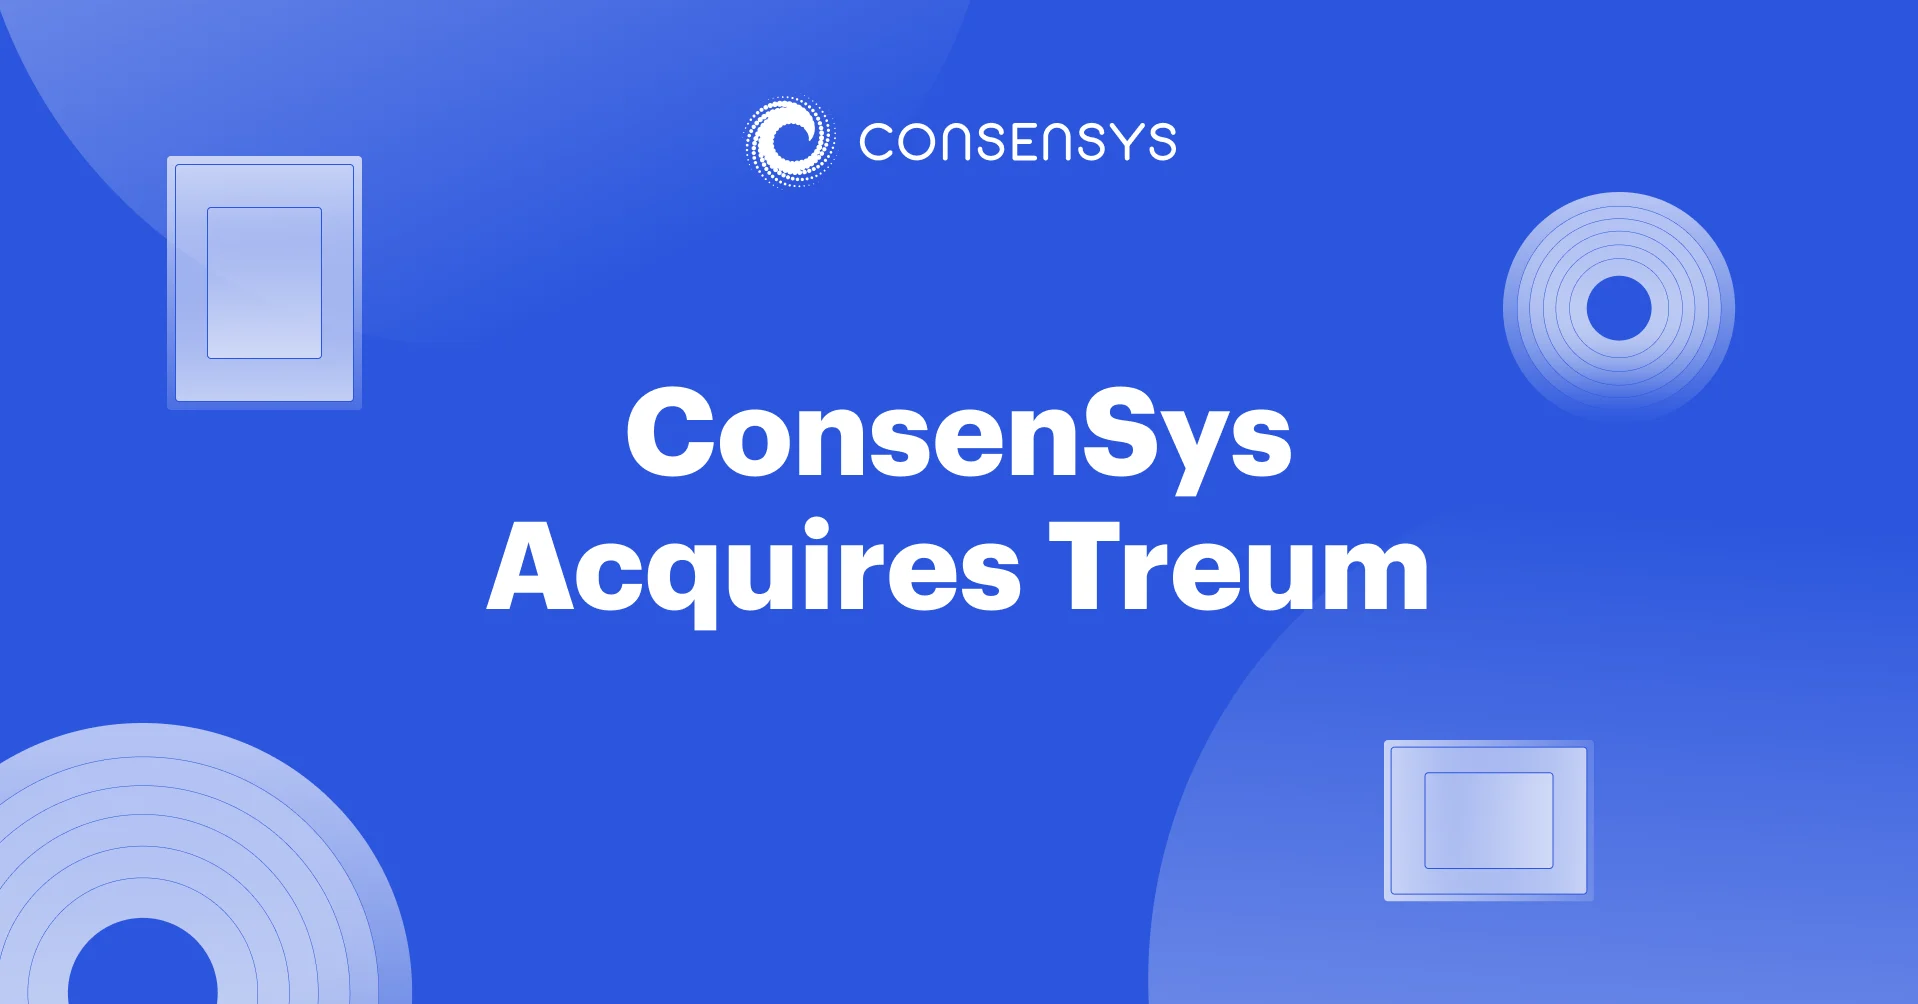 Image: ConsenSys Acquires Treum